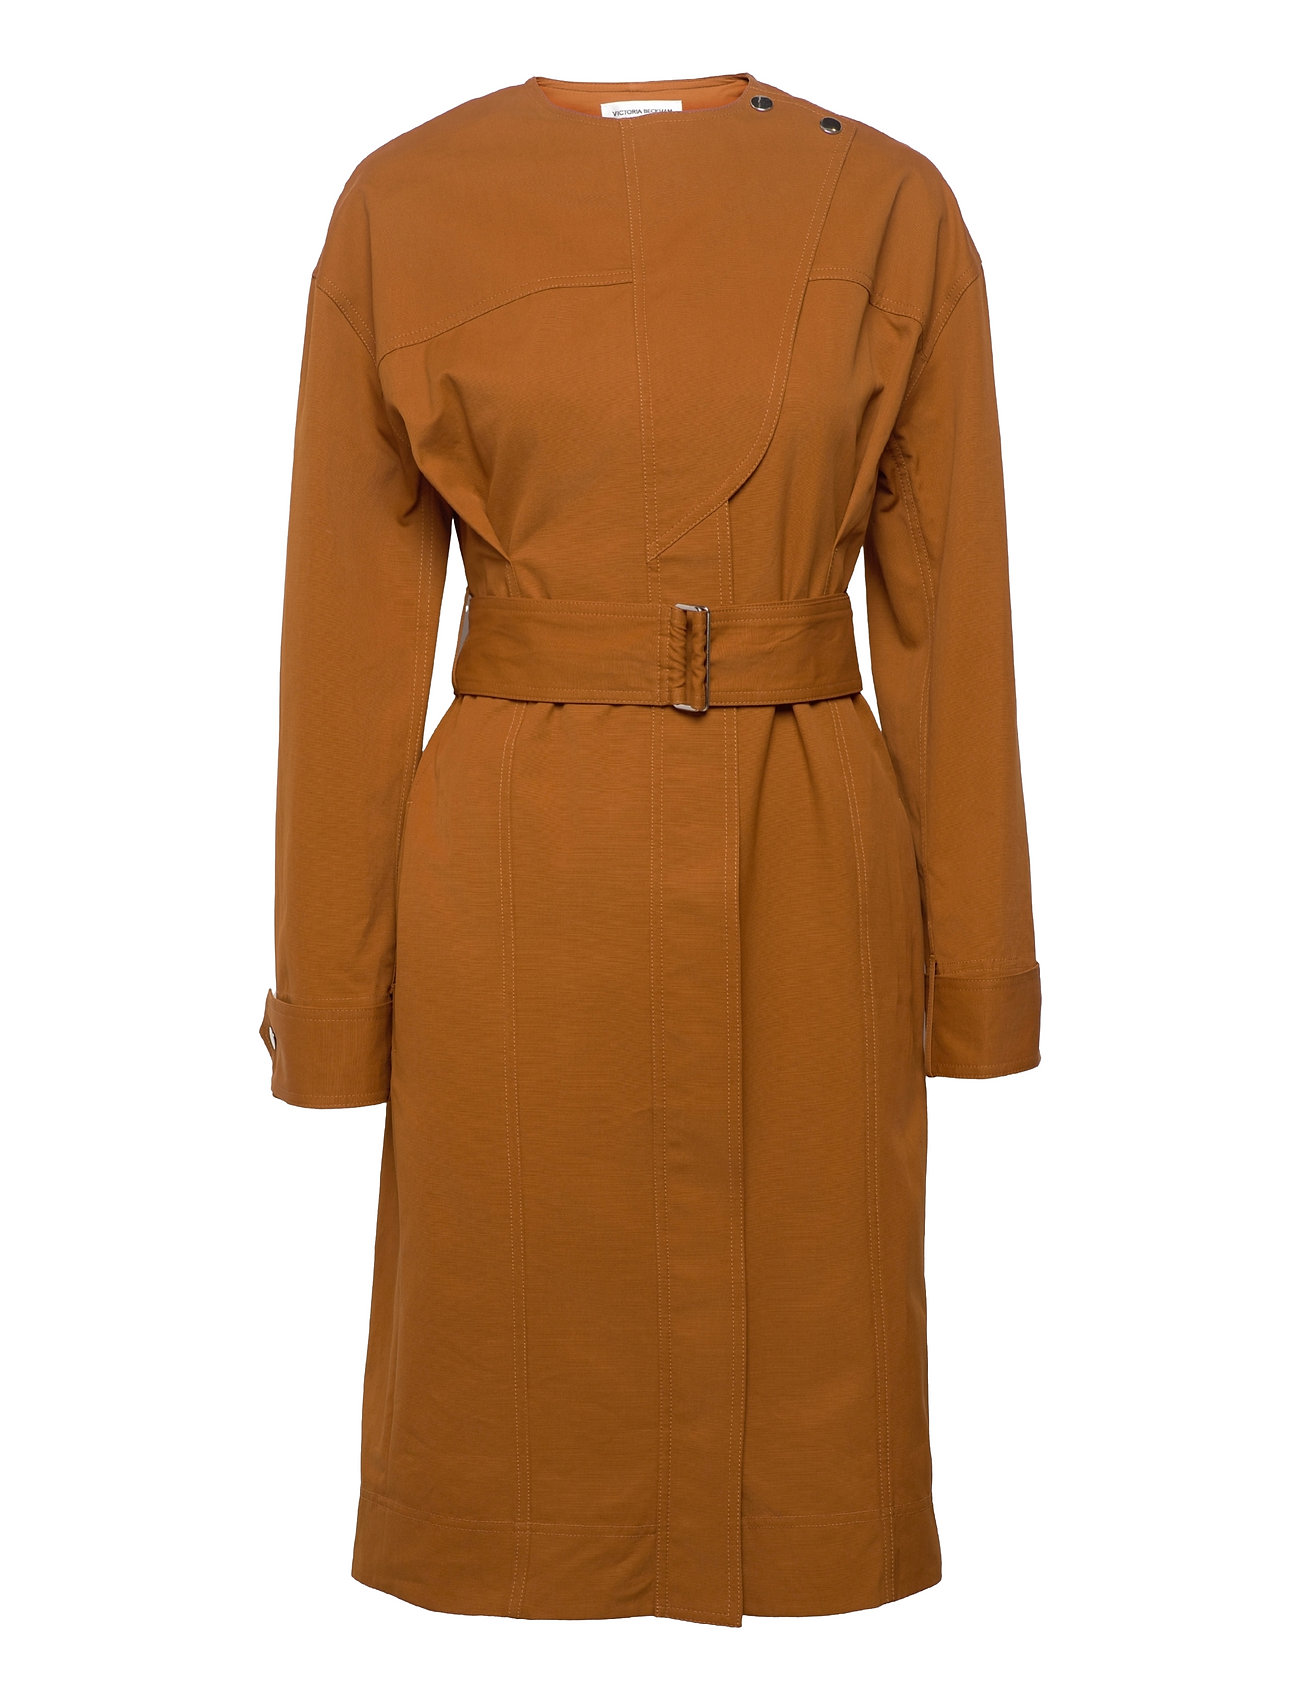 Victoria Beckham Utility Belted Dress (Tobacco), 1727.64 kr udvalg af designer mærker | Booztlet.com